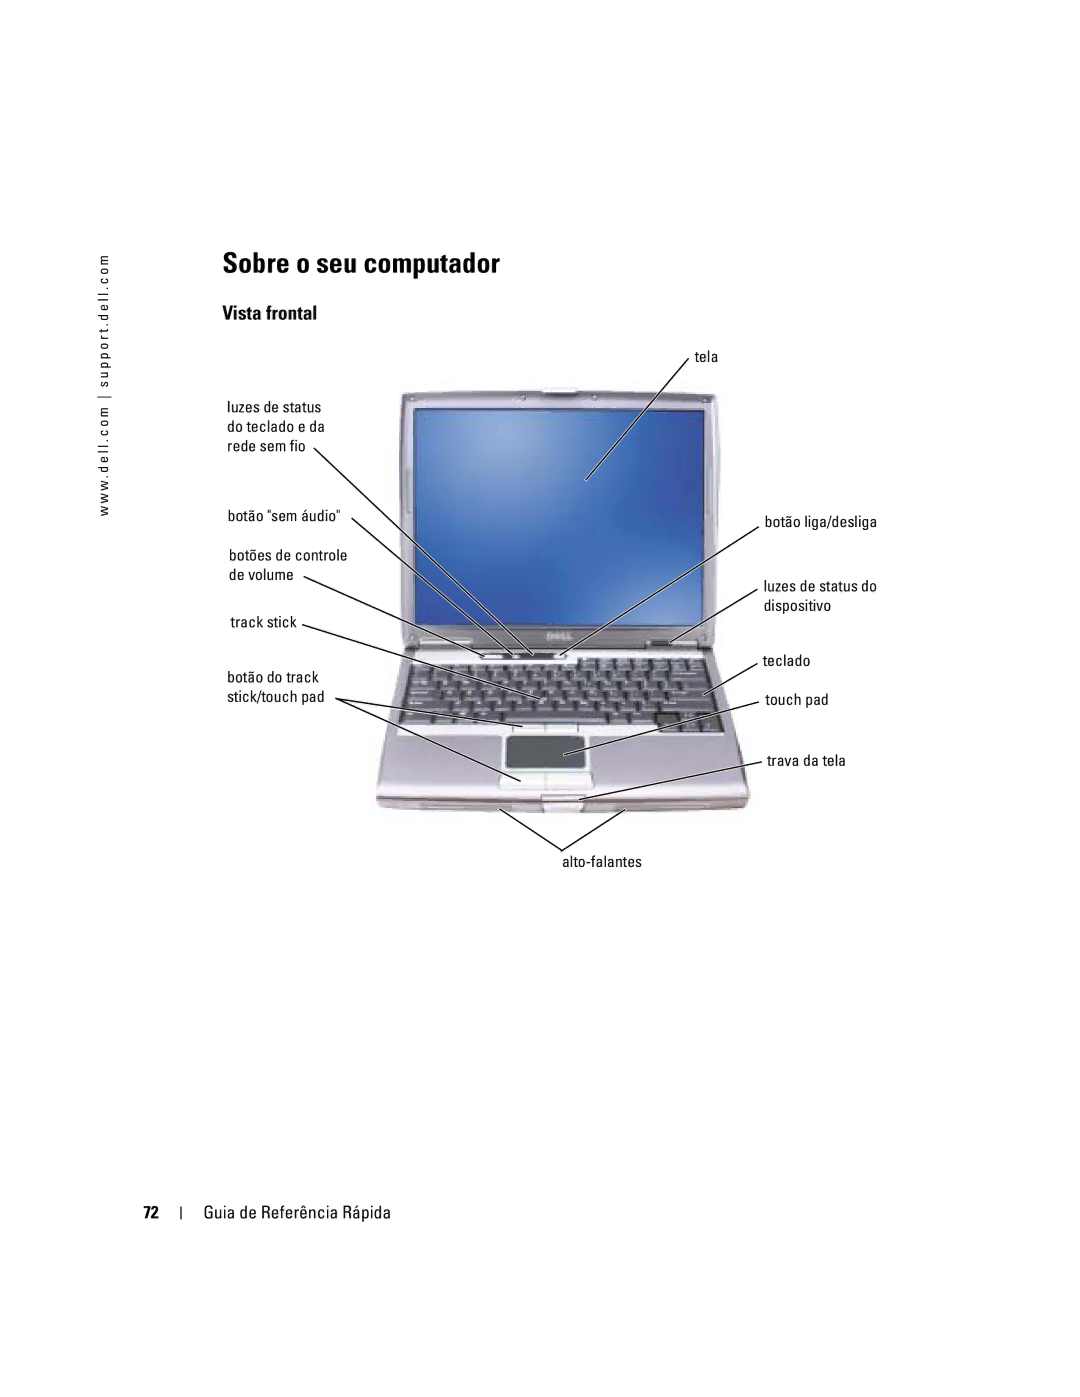 Dell D610 manual Sobre o seu computador, Vista frontal, Tela, Botão sem áudio 